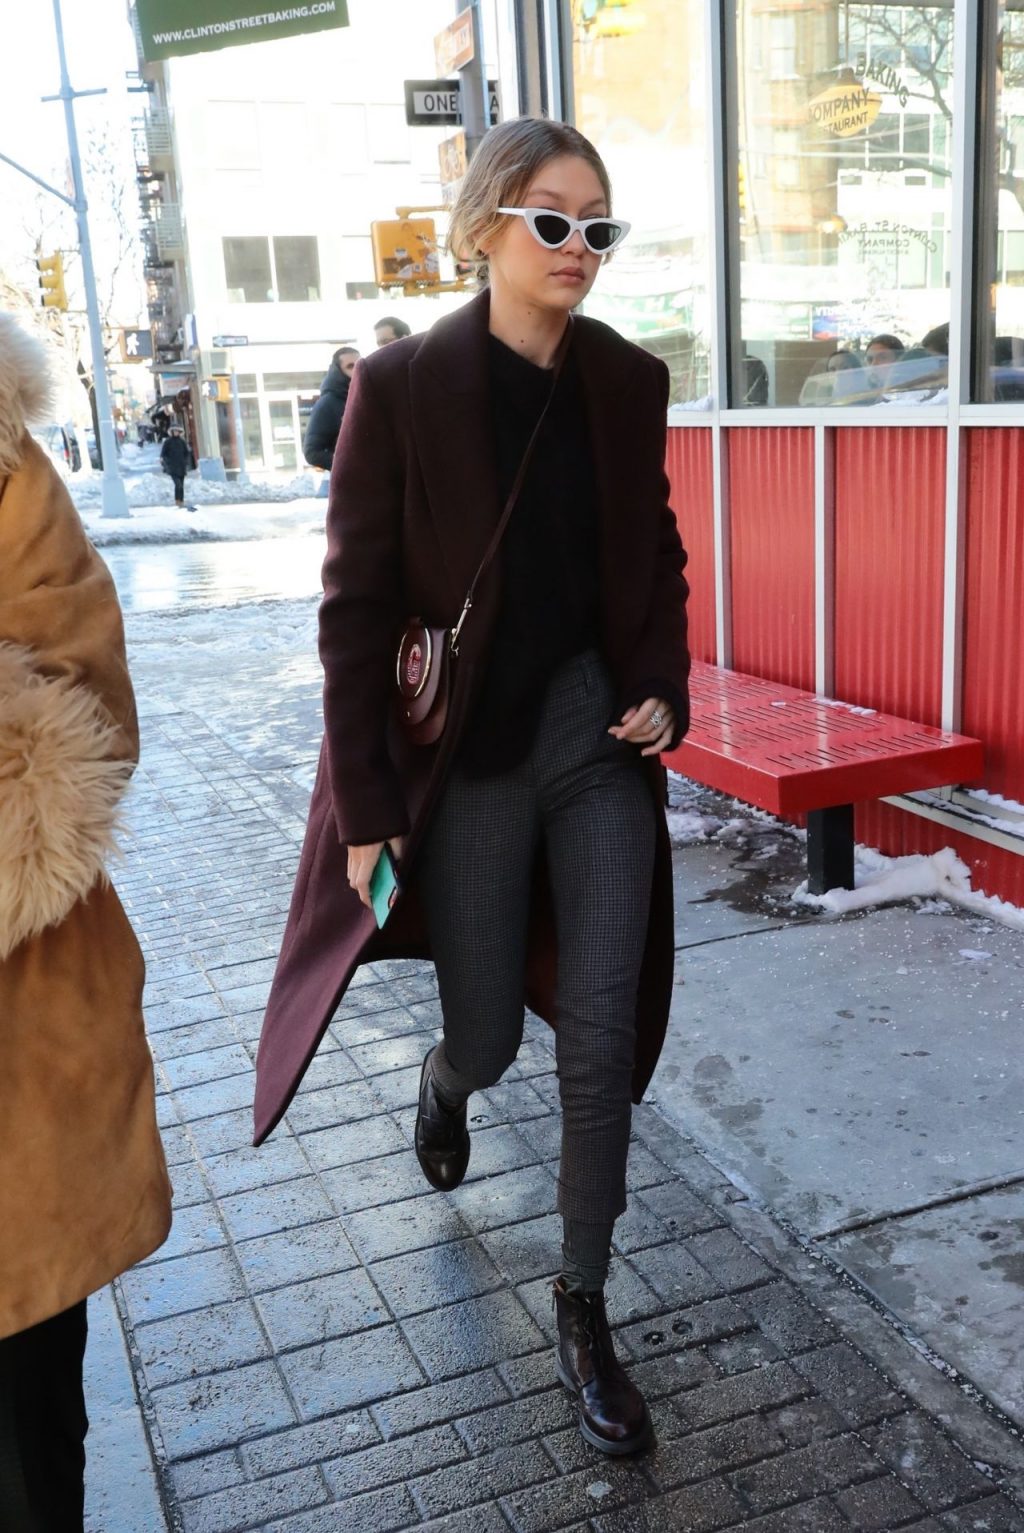 Giá lạnh New York không thể cản bước Gigi Hadid và các chân dài mặc đẹpGiá lạnh New York không thể cản bước Gigi Hadid và các chân dài mặc đẹp